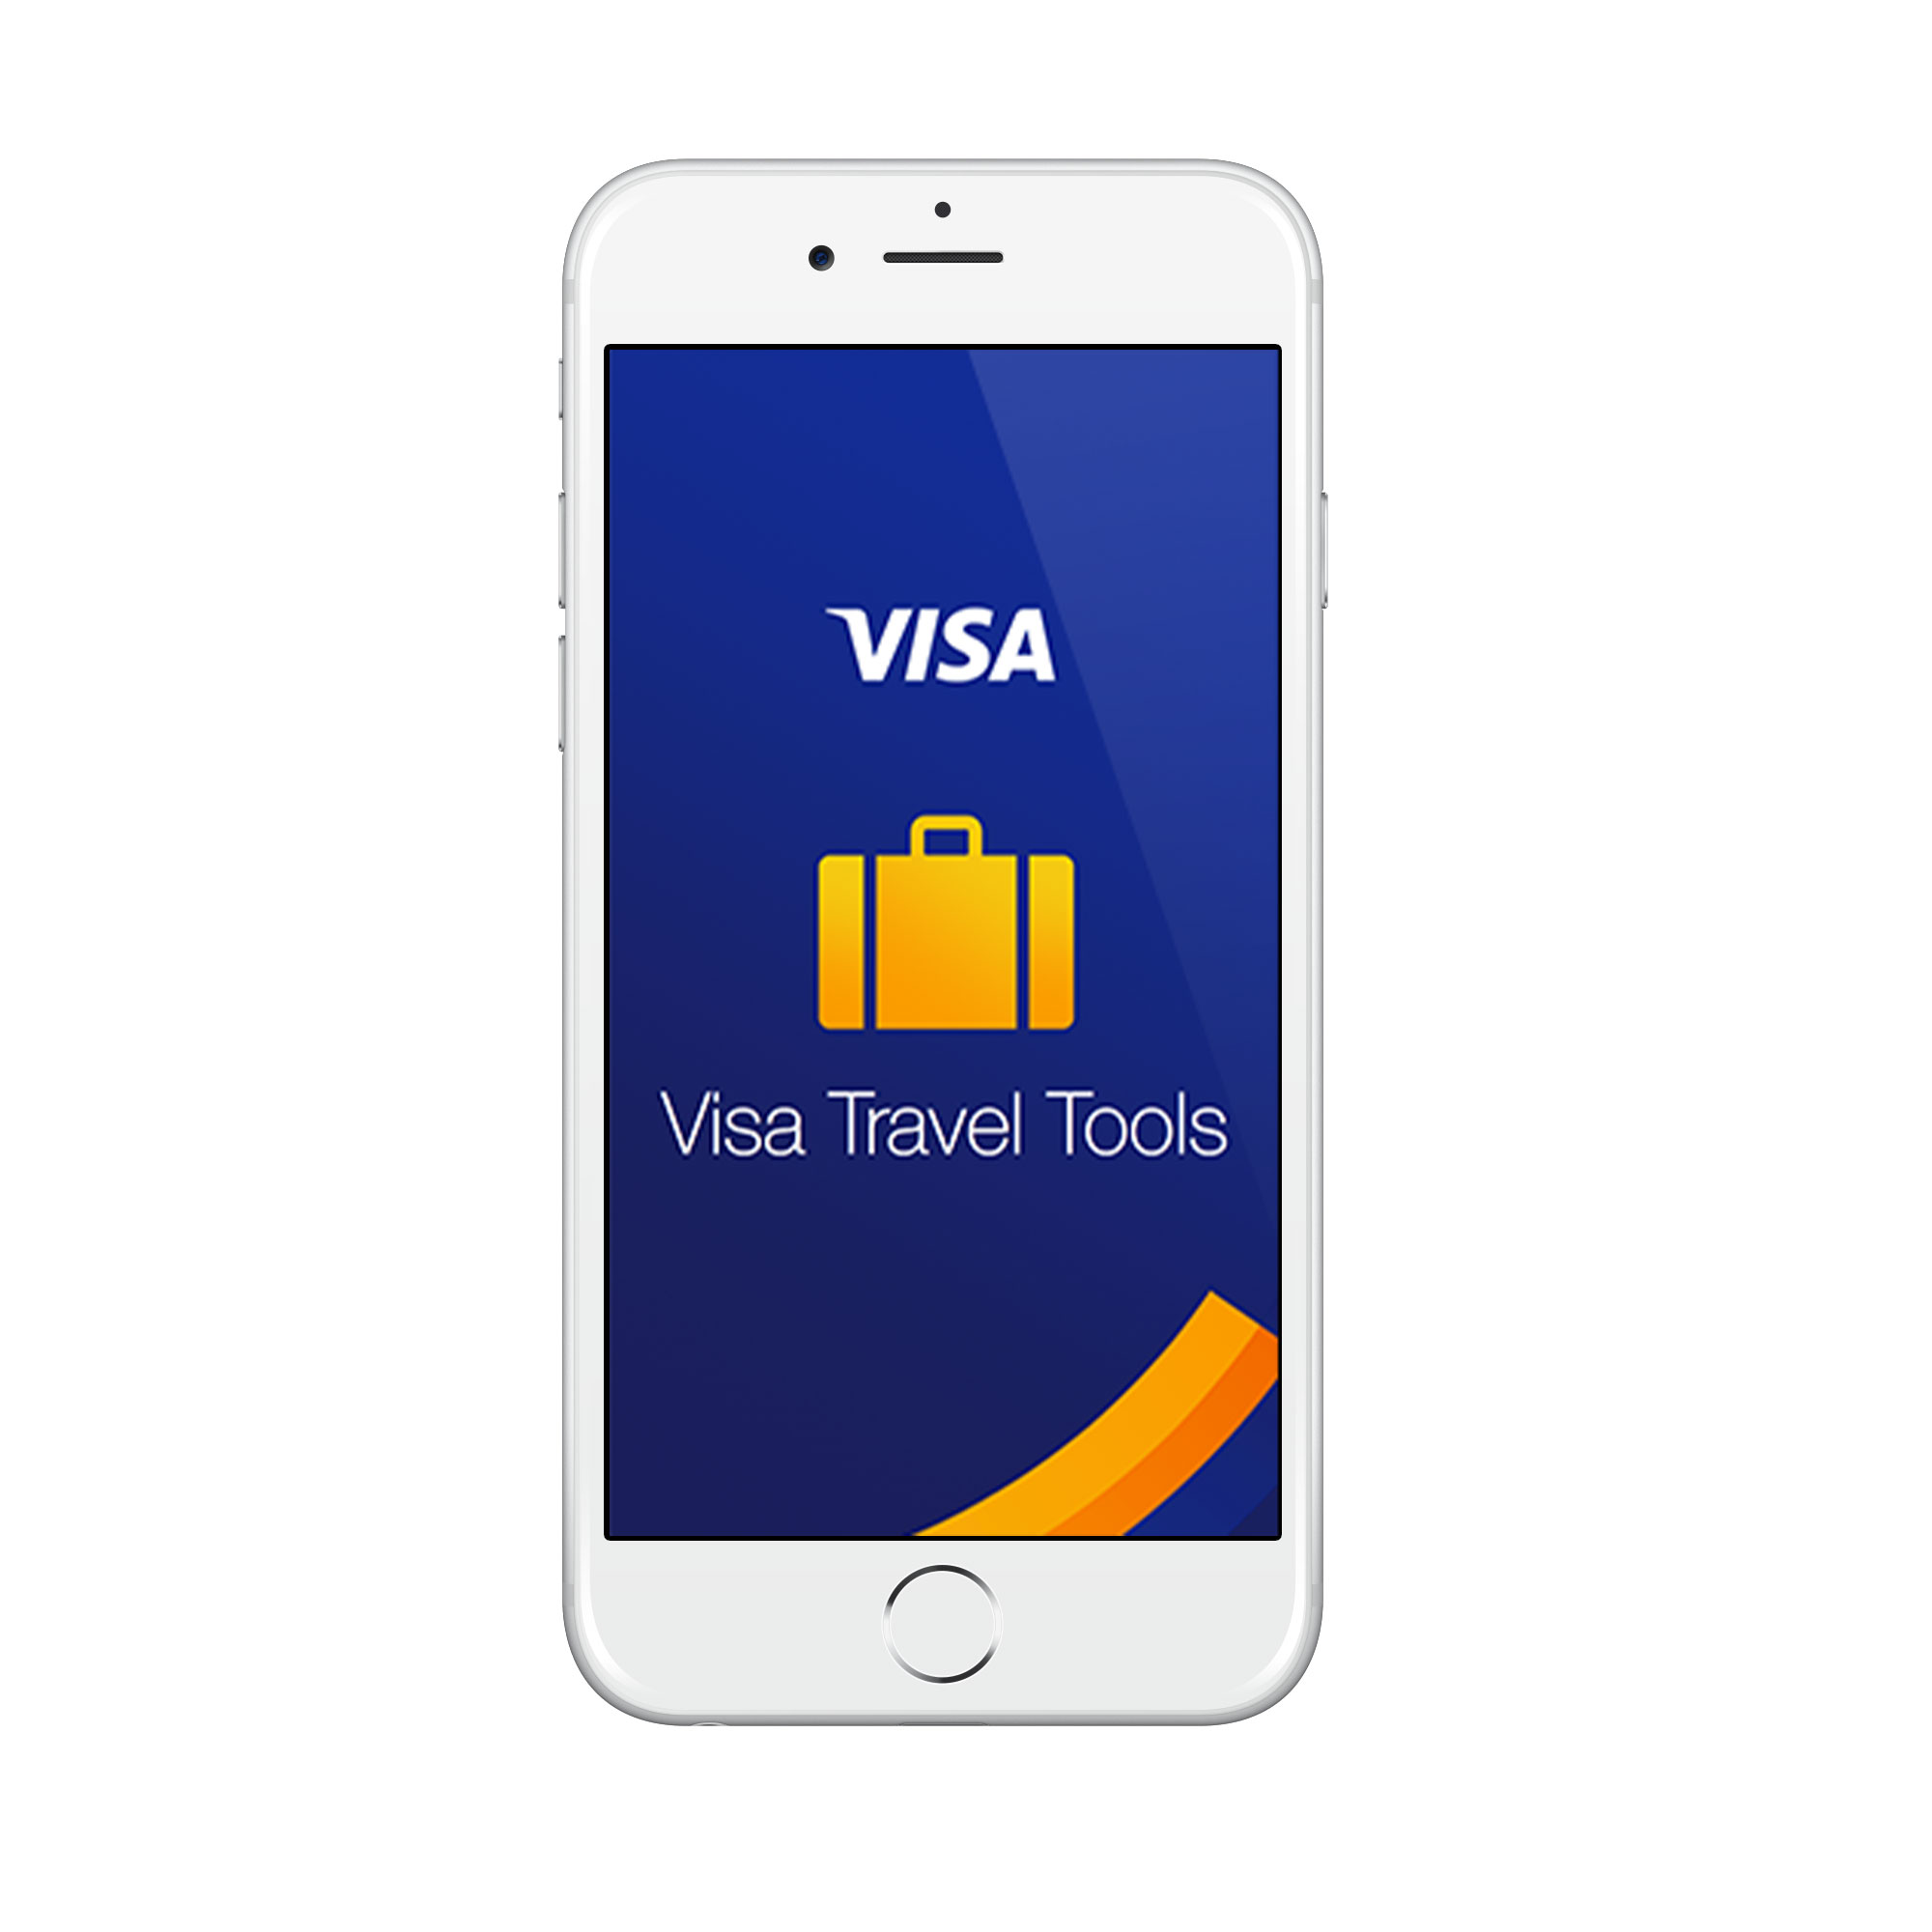 visa-iphone-arrivalguides